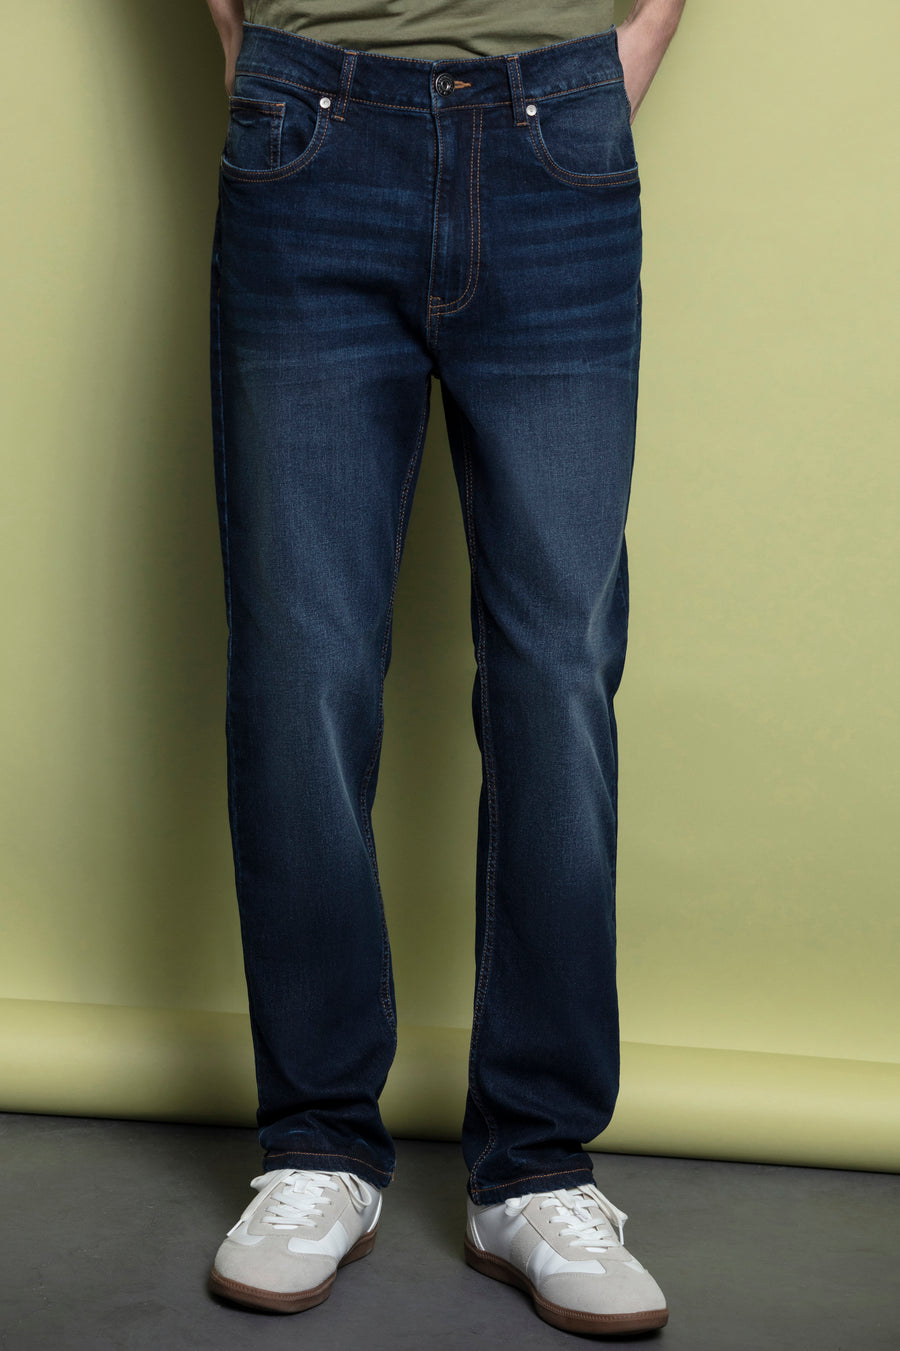 Jeans regular fit com cinco bolsos e fecho de correr com botão à frente.